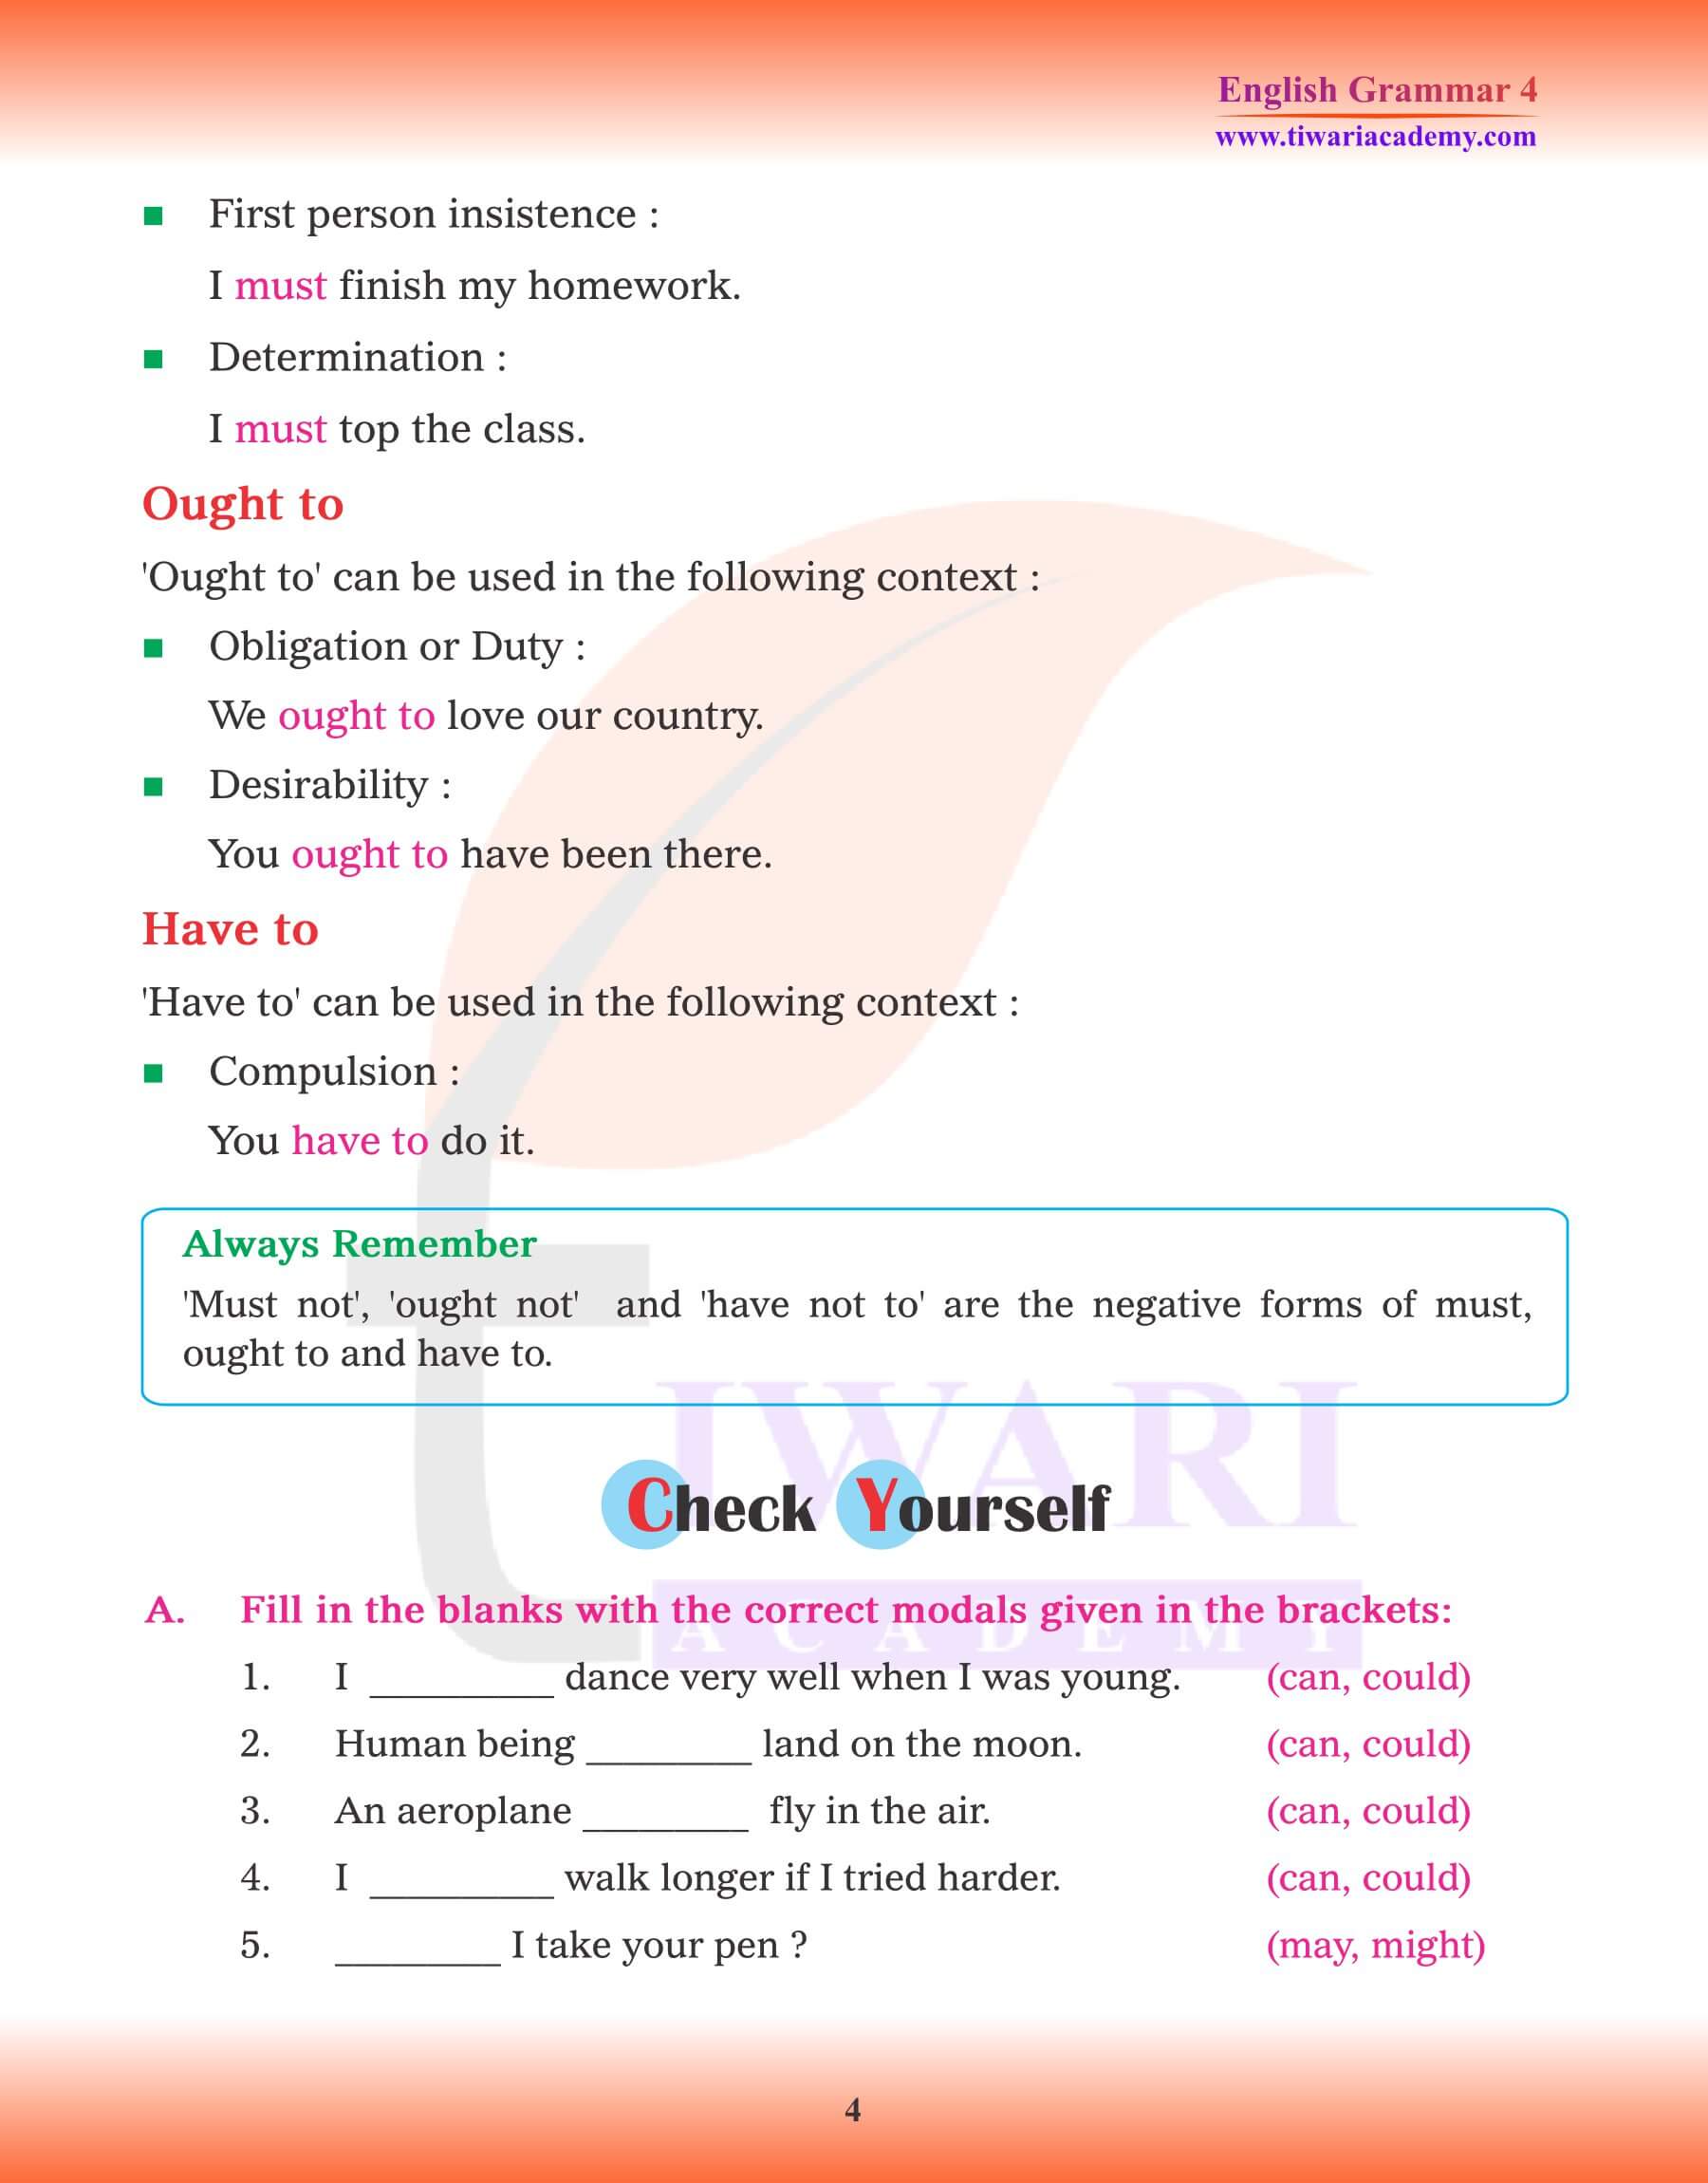 Class 4 English Grammar Types of Modals